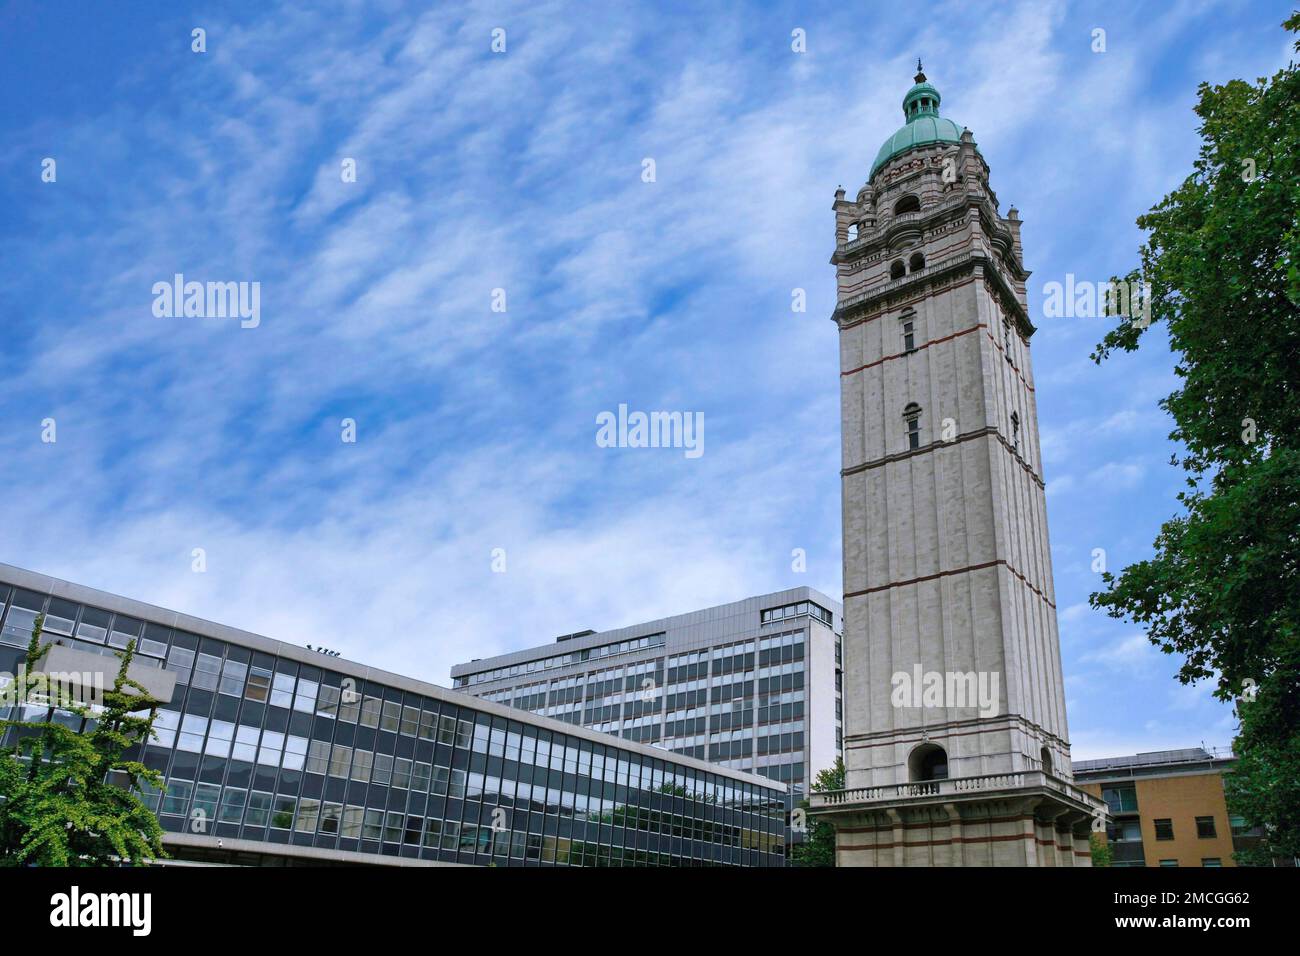 London, England - Juli 2009: Imperial College of Science, eine führende Technologie-Universität, zentraler Innenhof mit dem Queen's Tower, aus dem Jahr 1899 Stockfoto